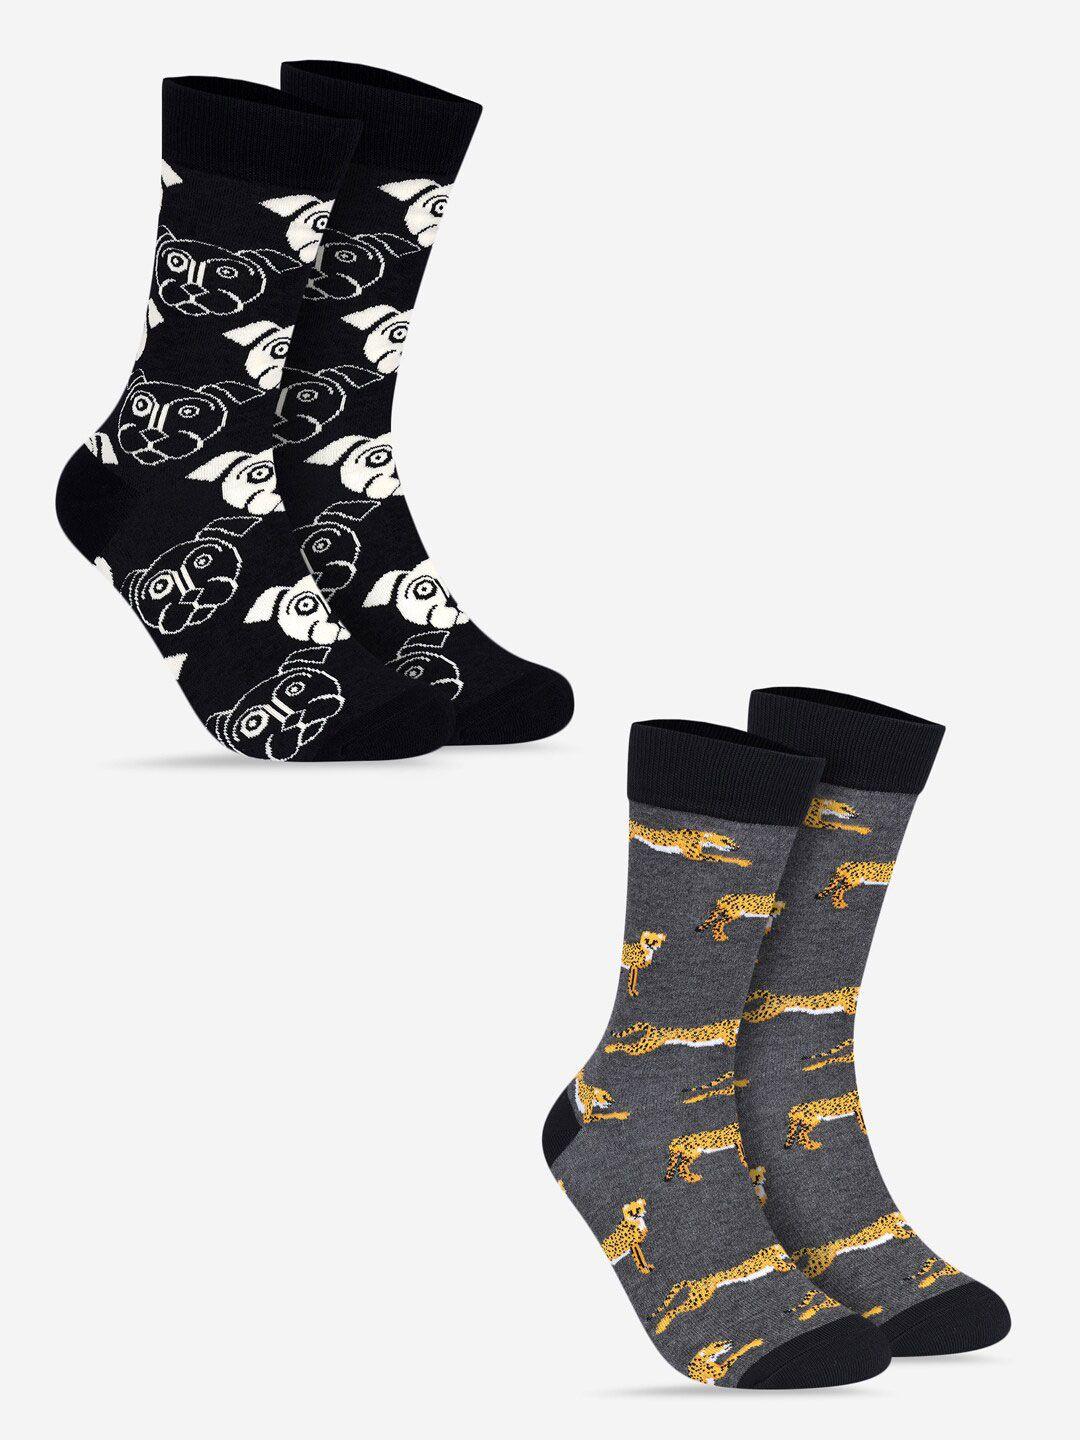 toffcraft-men-pack-of-2-patterned-cotton-calf-length-socks